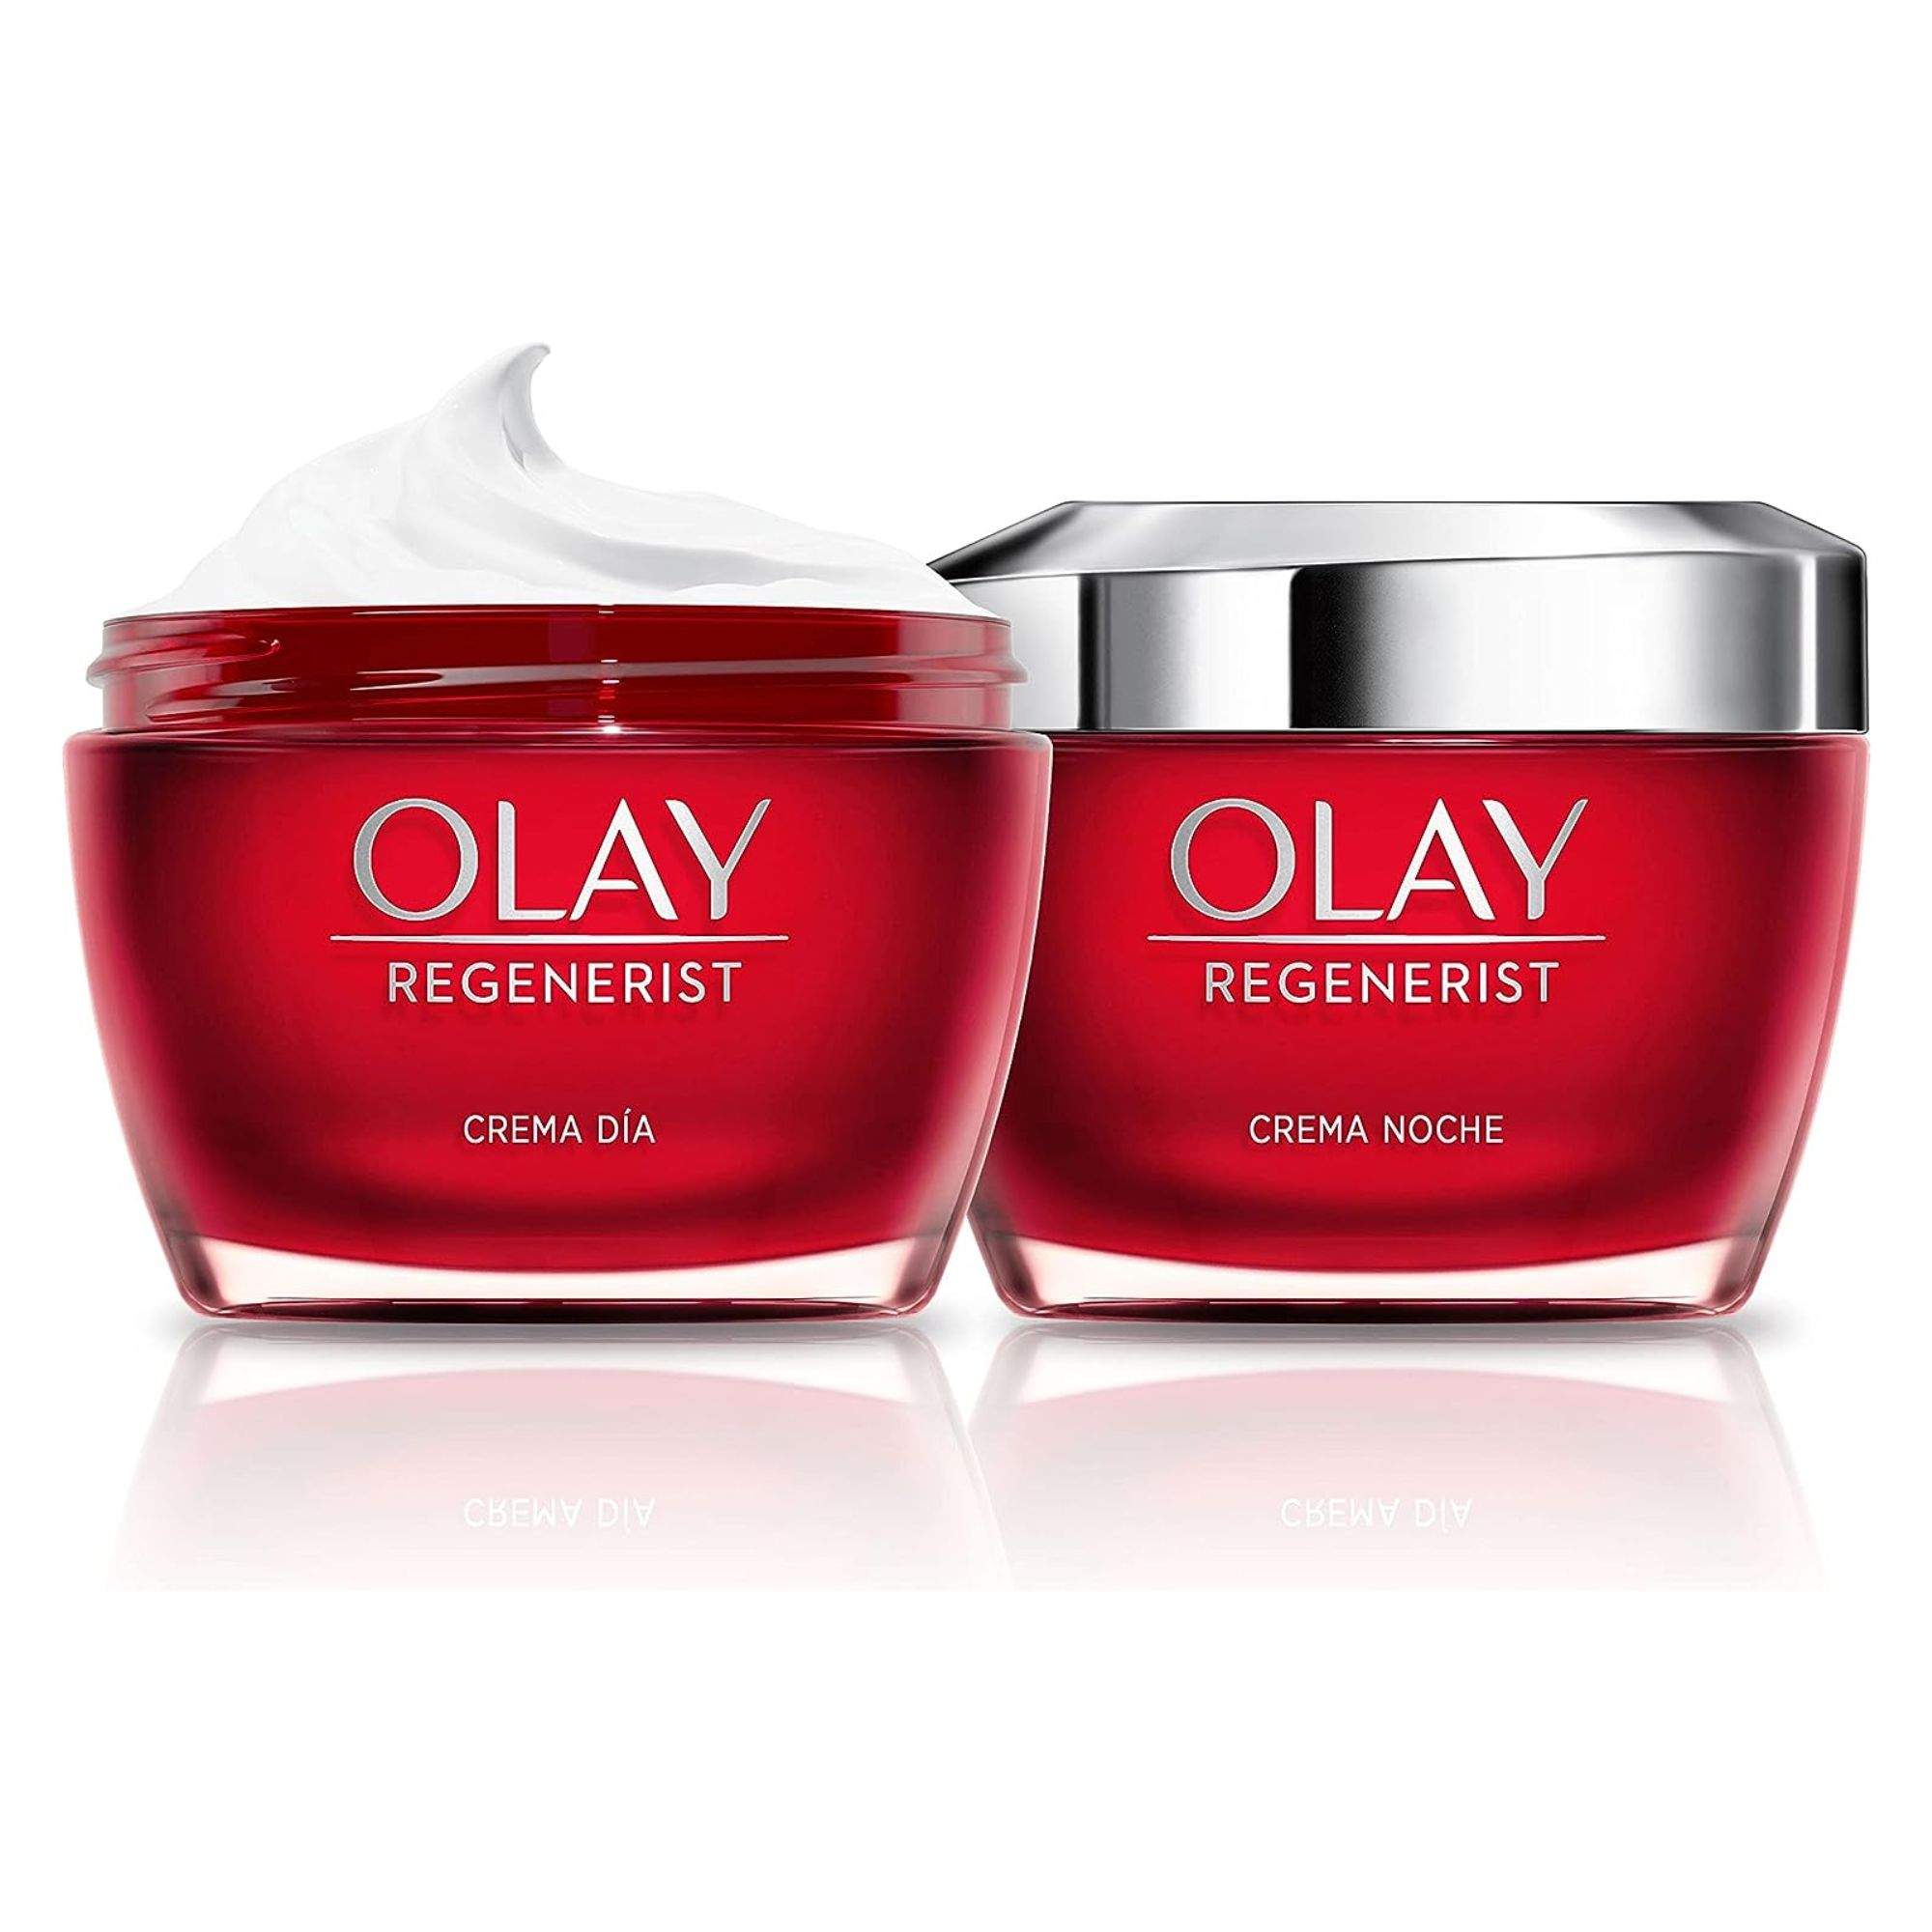 Puedes encontrar cremas para hidratar tu piel día y noche de Olay en Amazon con un 19% de descuento